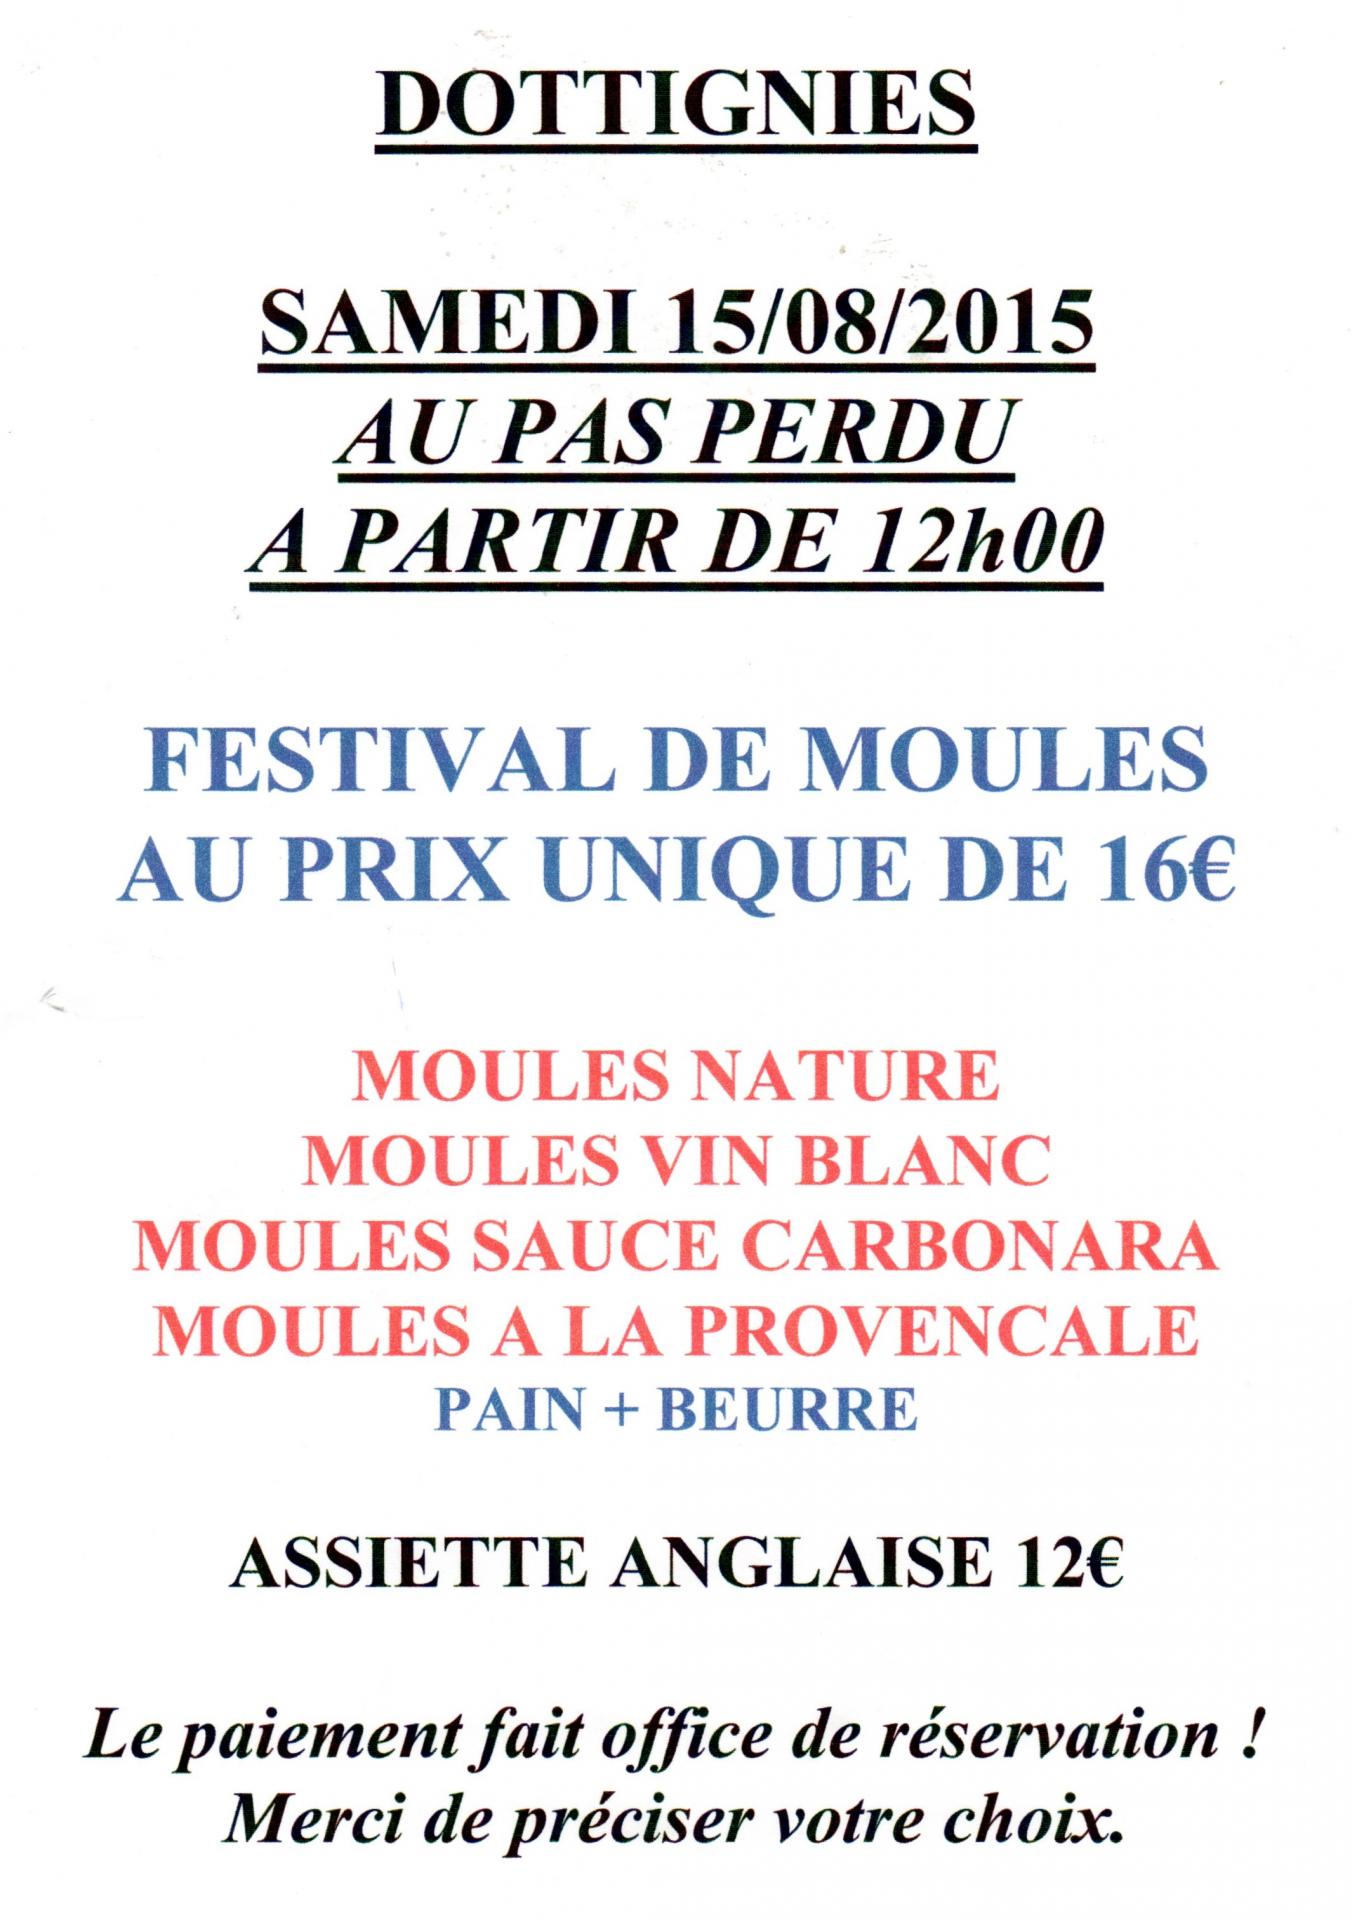 Festival de Moules - Dottignies